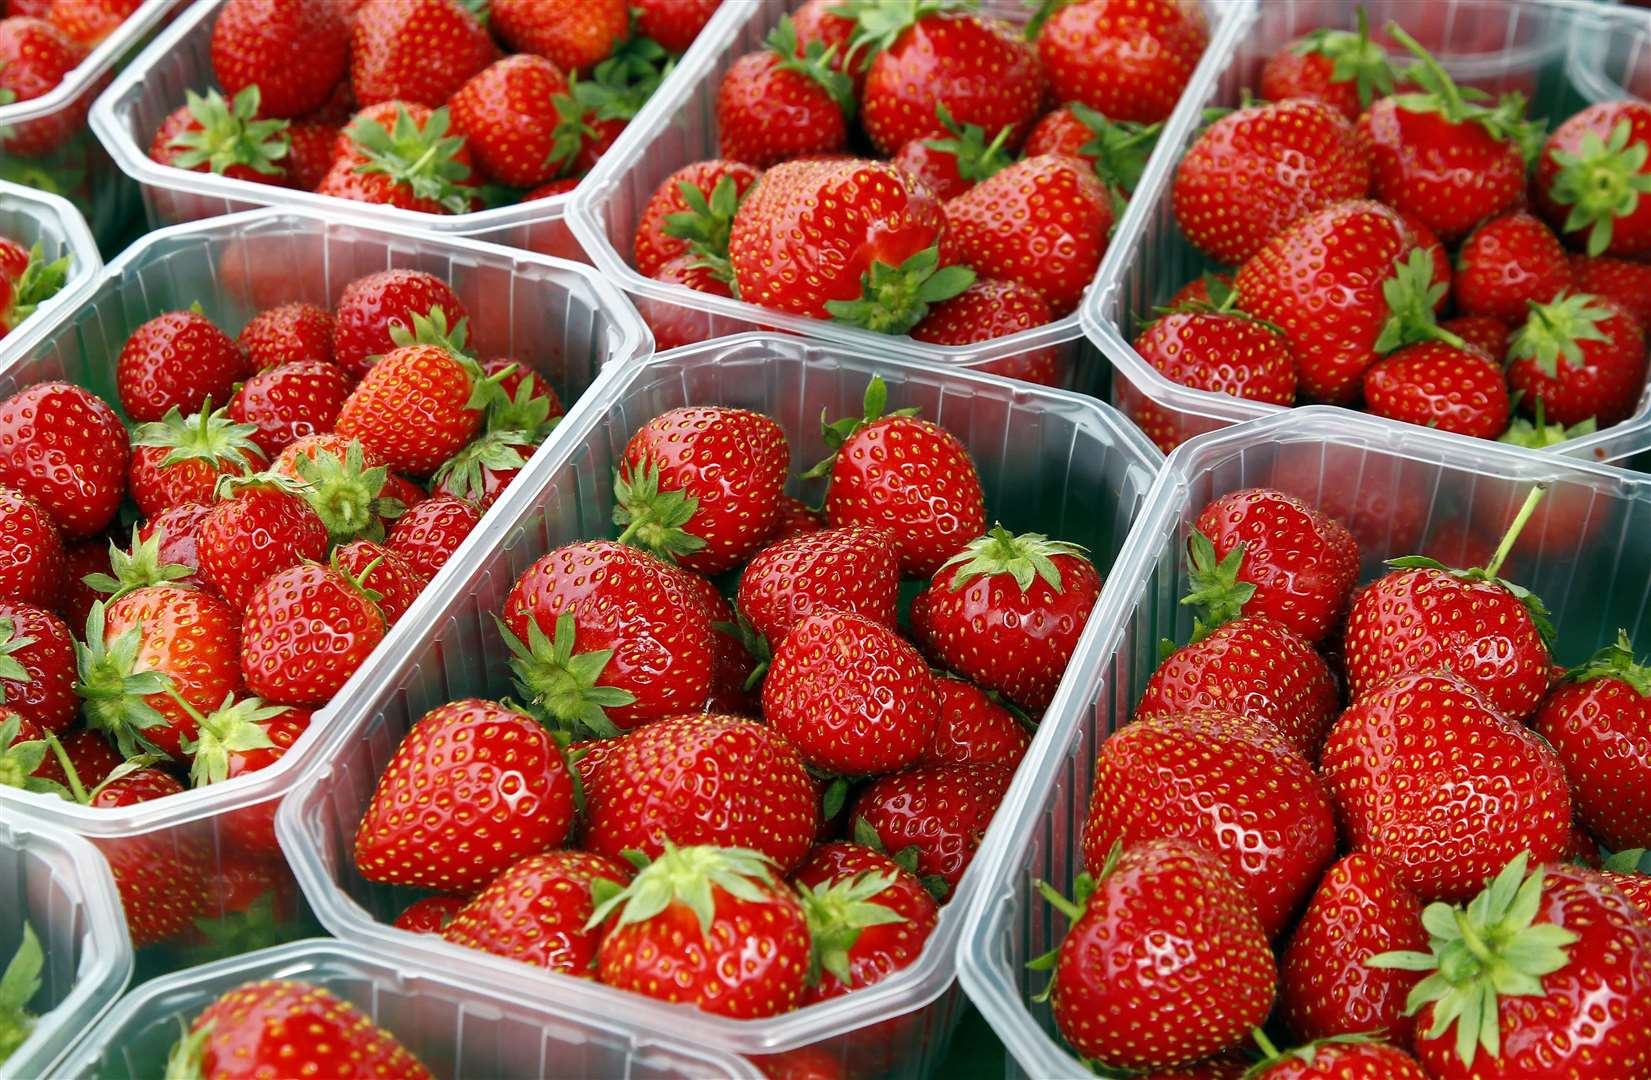 Kentish strawberries featured